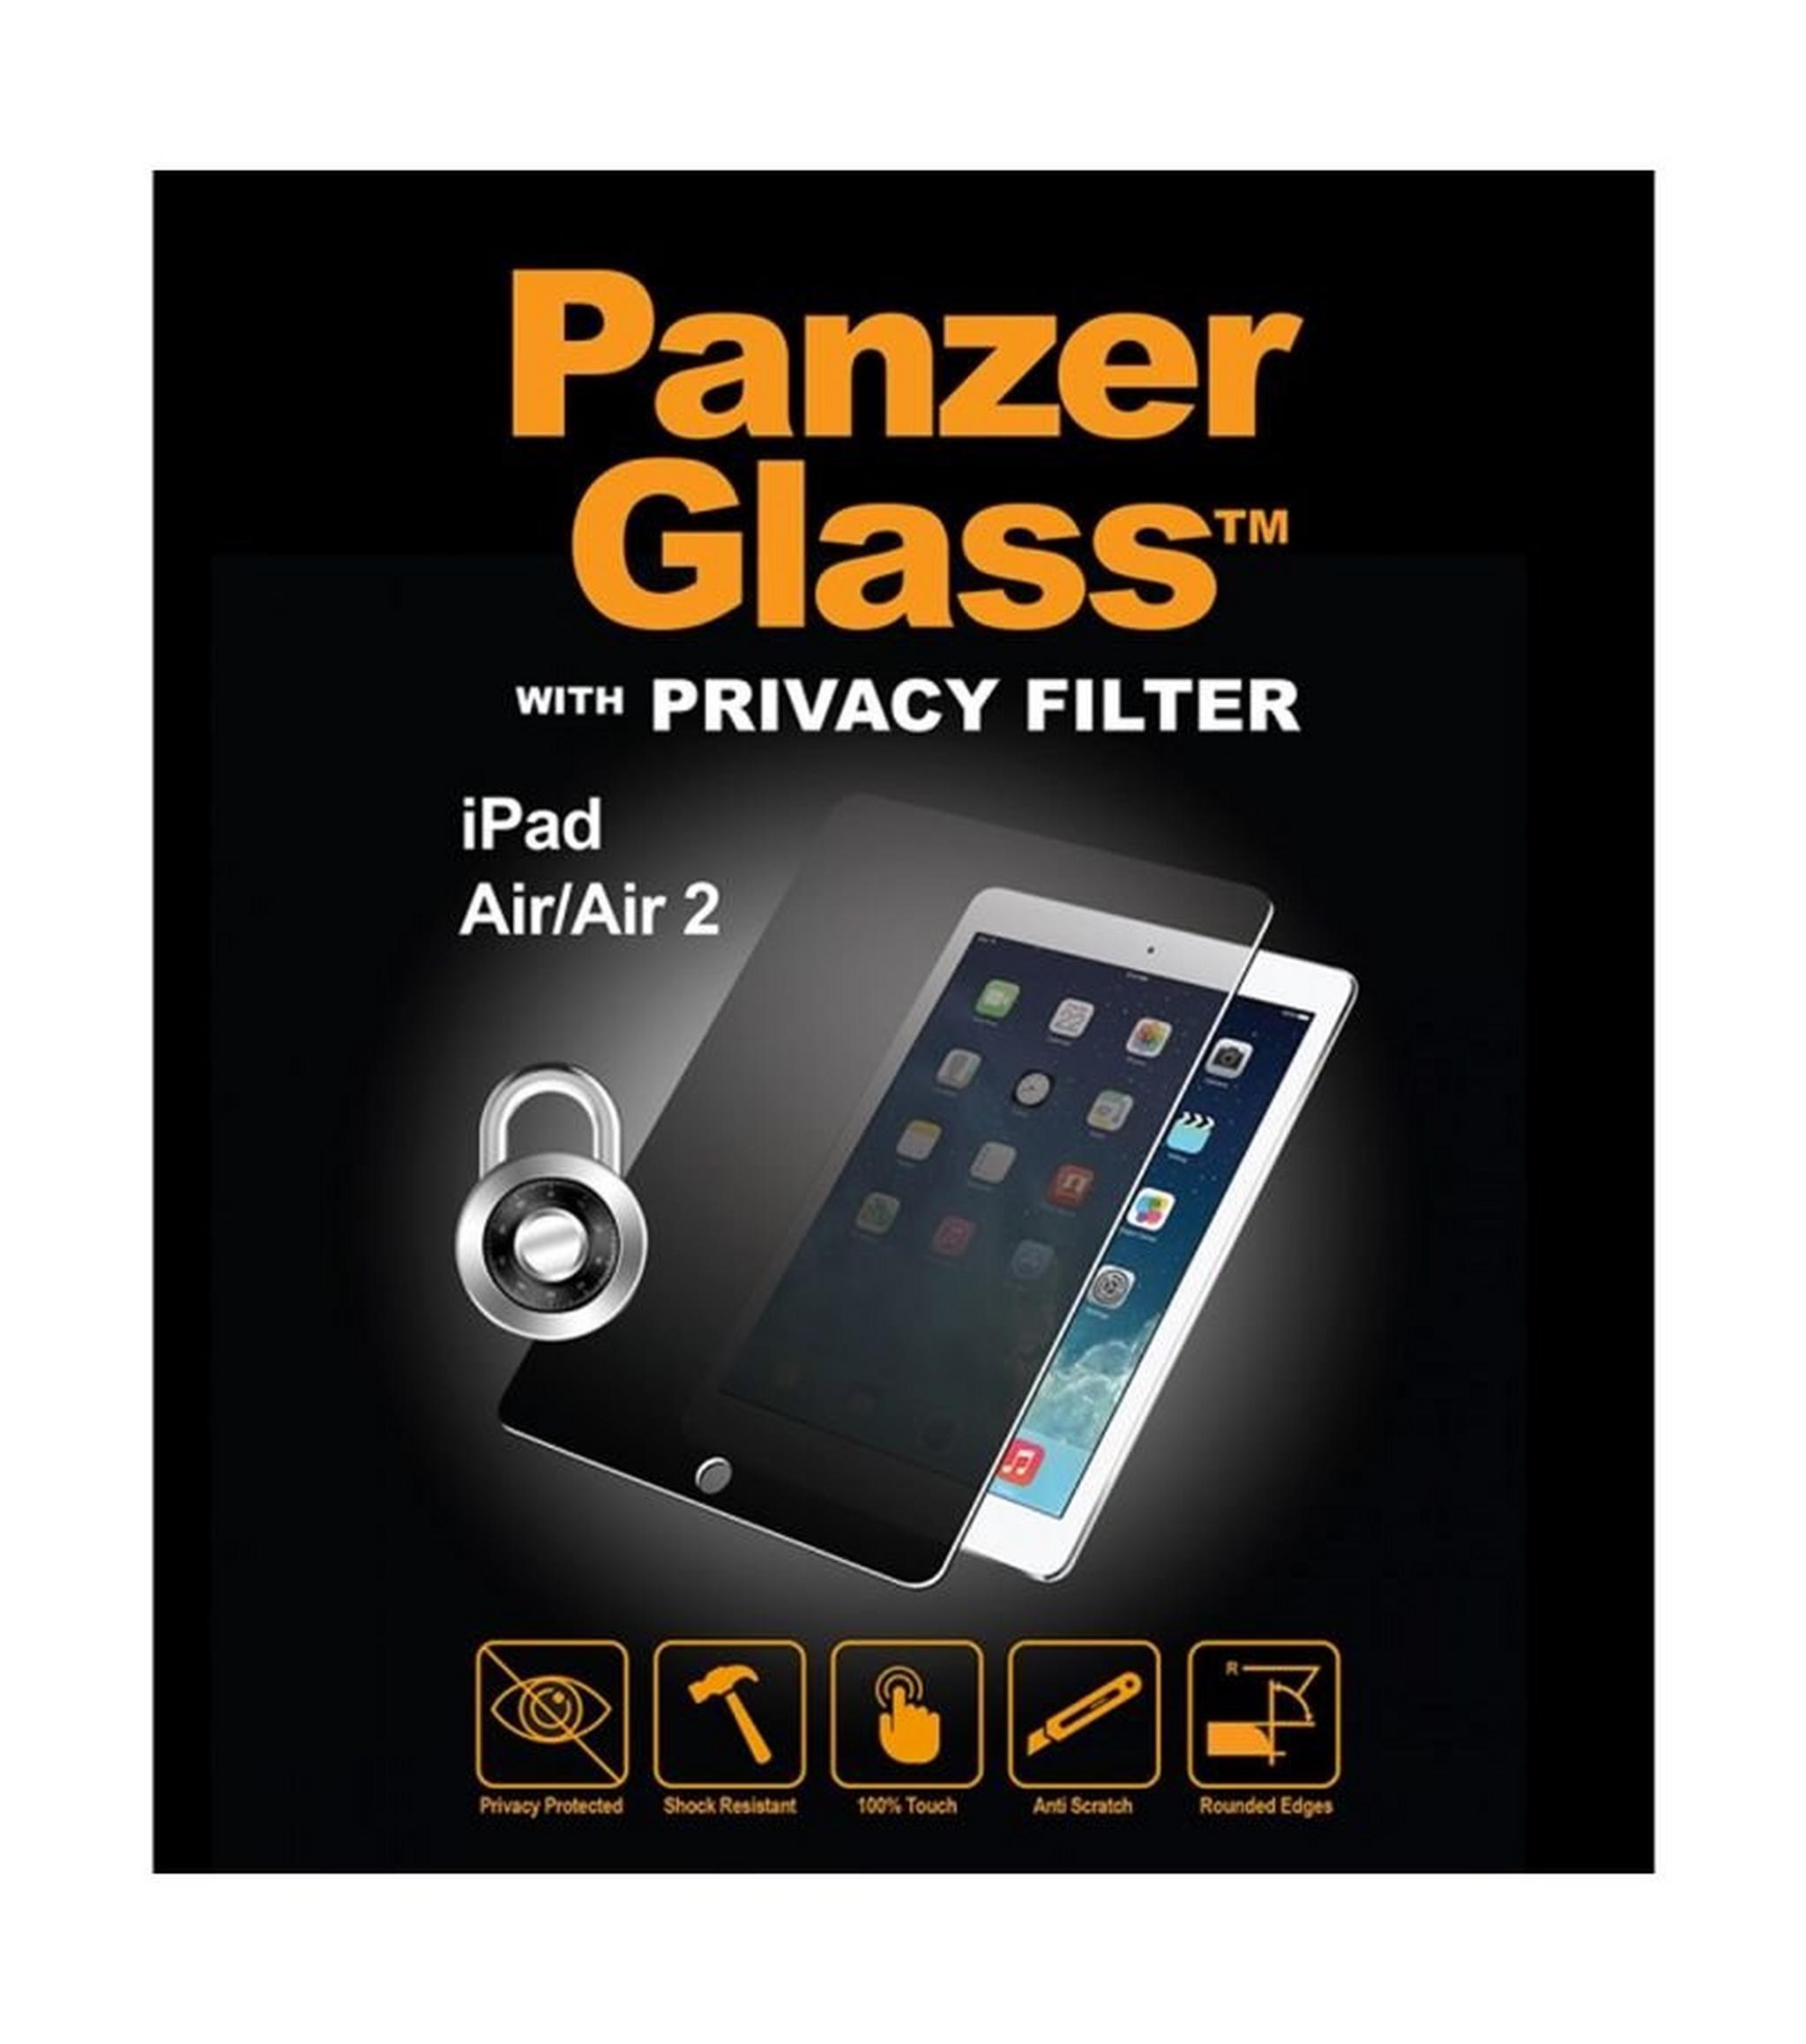 واقي الشاشة الزجاجي الأصلي مع فلتر الخصوصية لآيباد إير من بانزر - شفاف (1061)